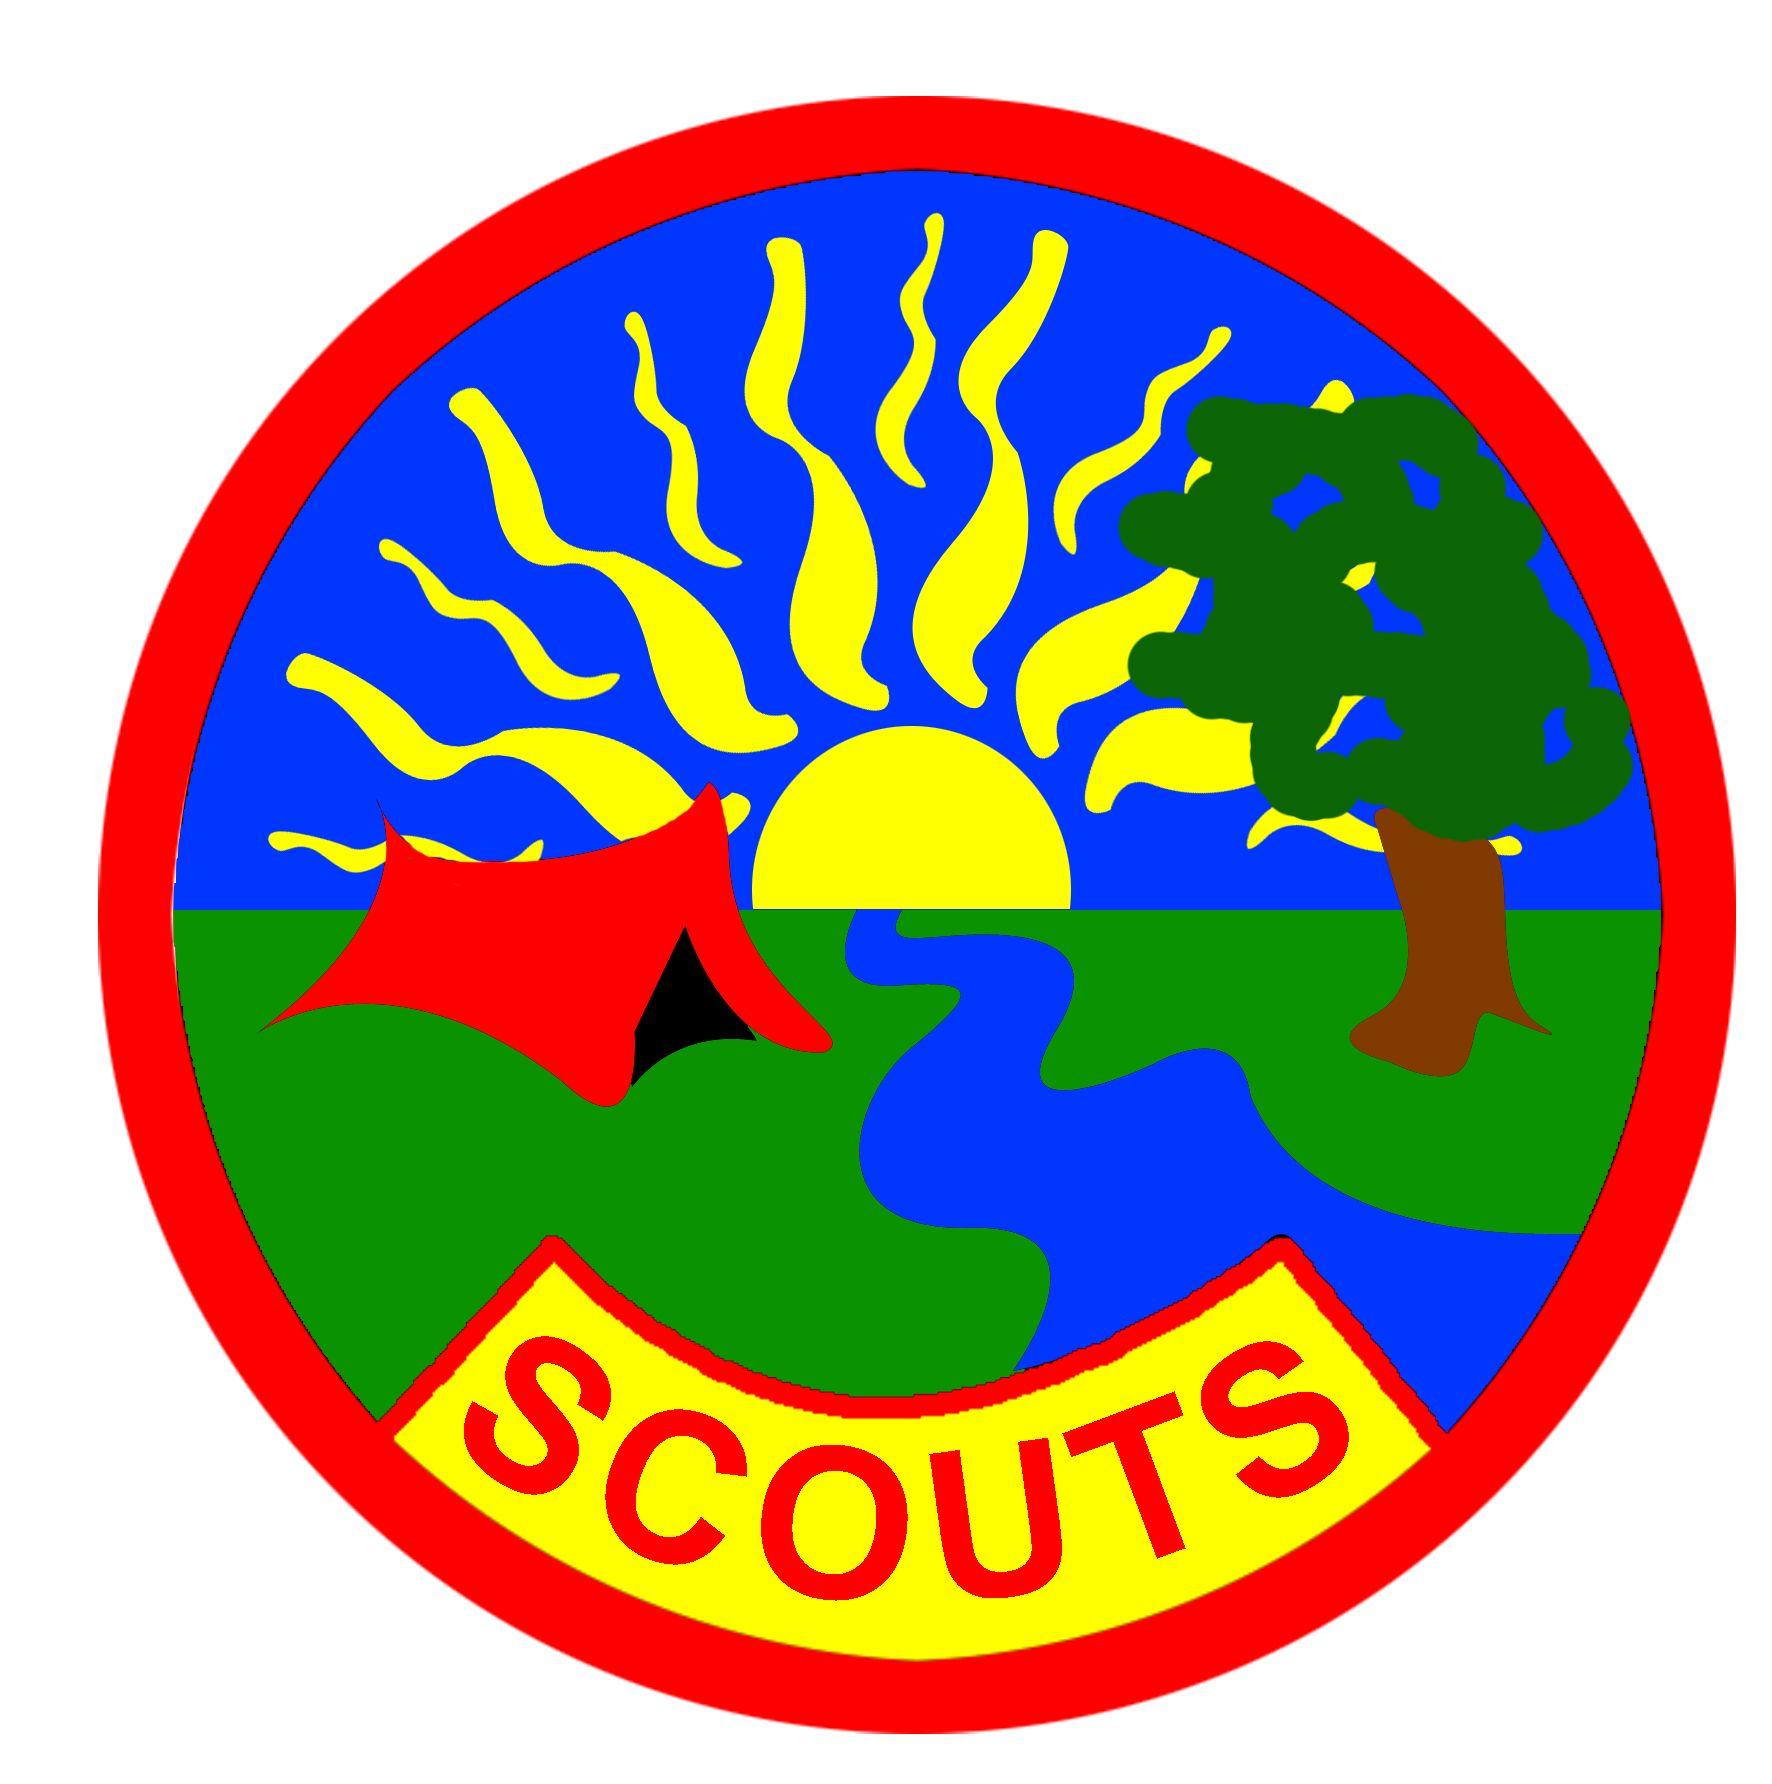 Scouting Logo - Sherpaz, Scouting Game, Make